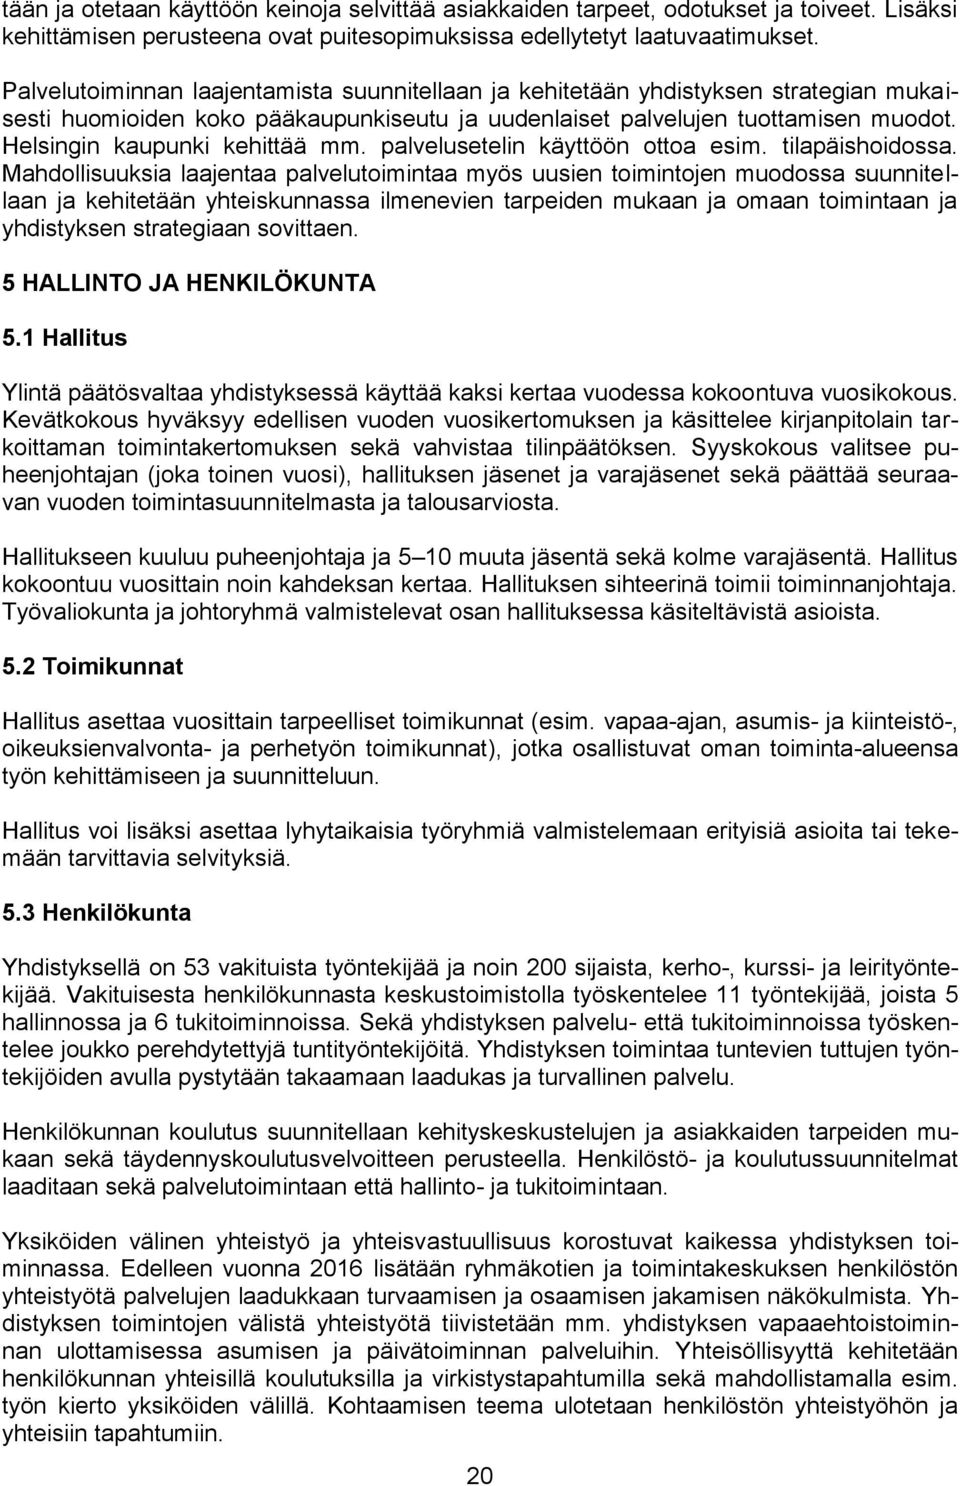 Helsingin kaupunki kehittää mm. palvelusetelin käyttöön ottoa esim. tilapäishoidossa.